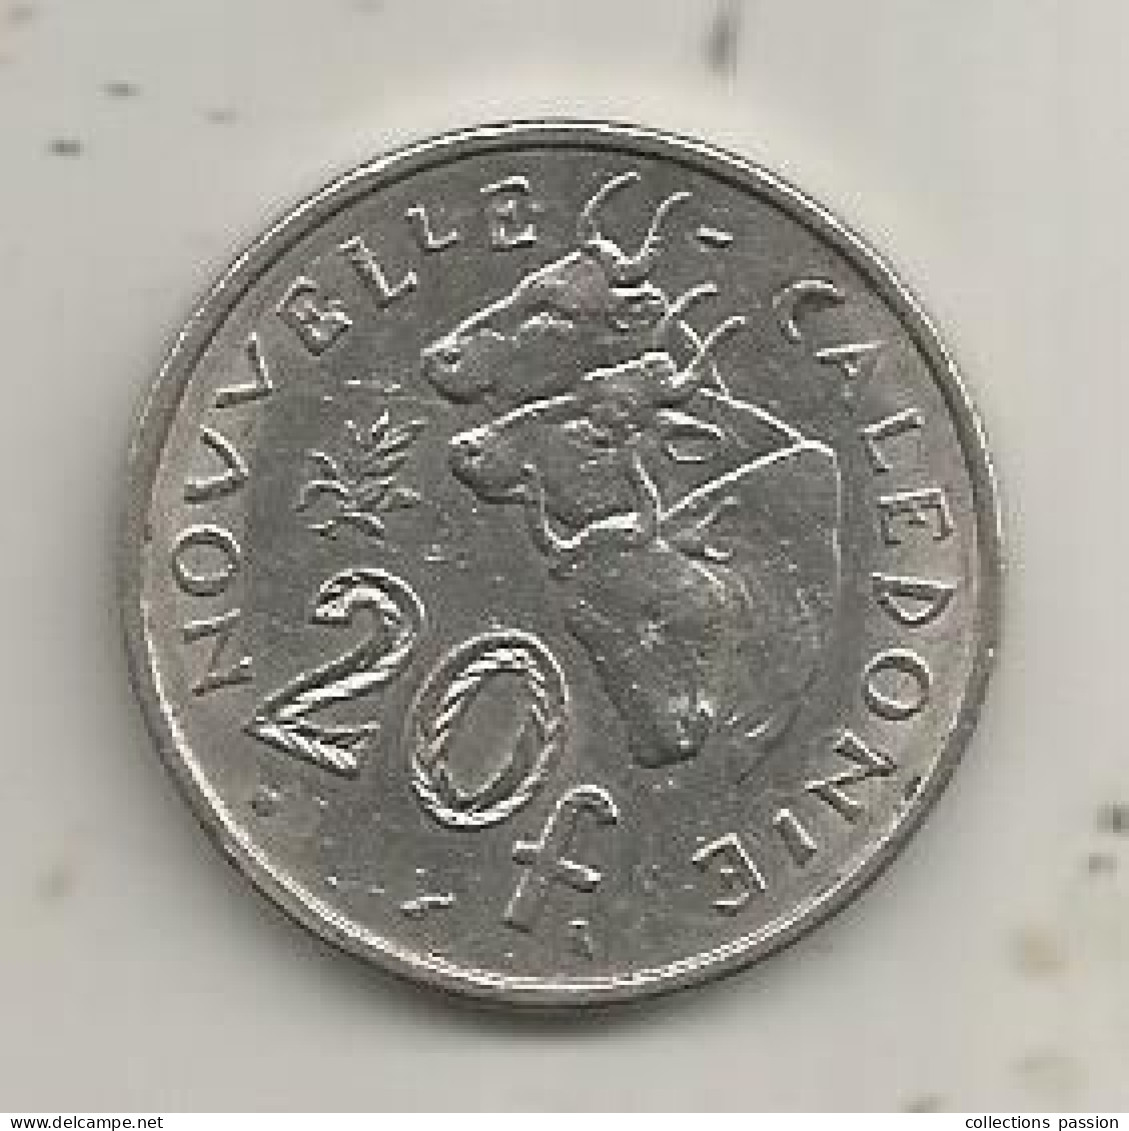 Monnaie, République Française, Nouvelle Calédonie, 1972, 20 Francs, 2 Scans - Nuova Caledonia